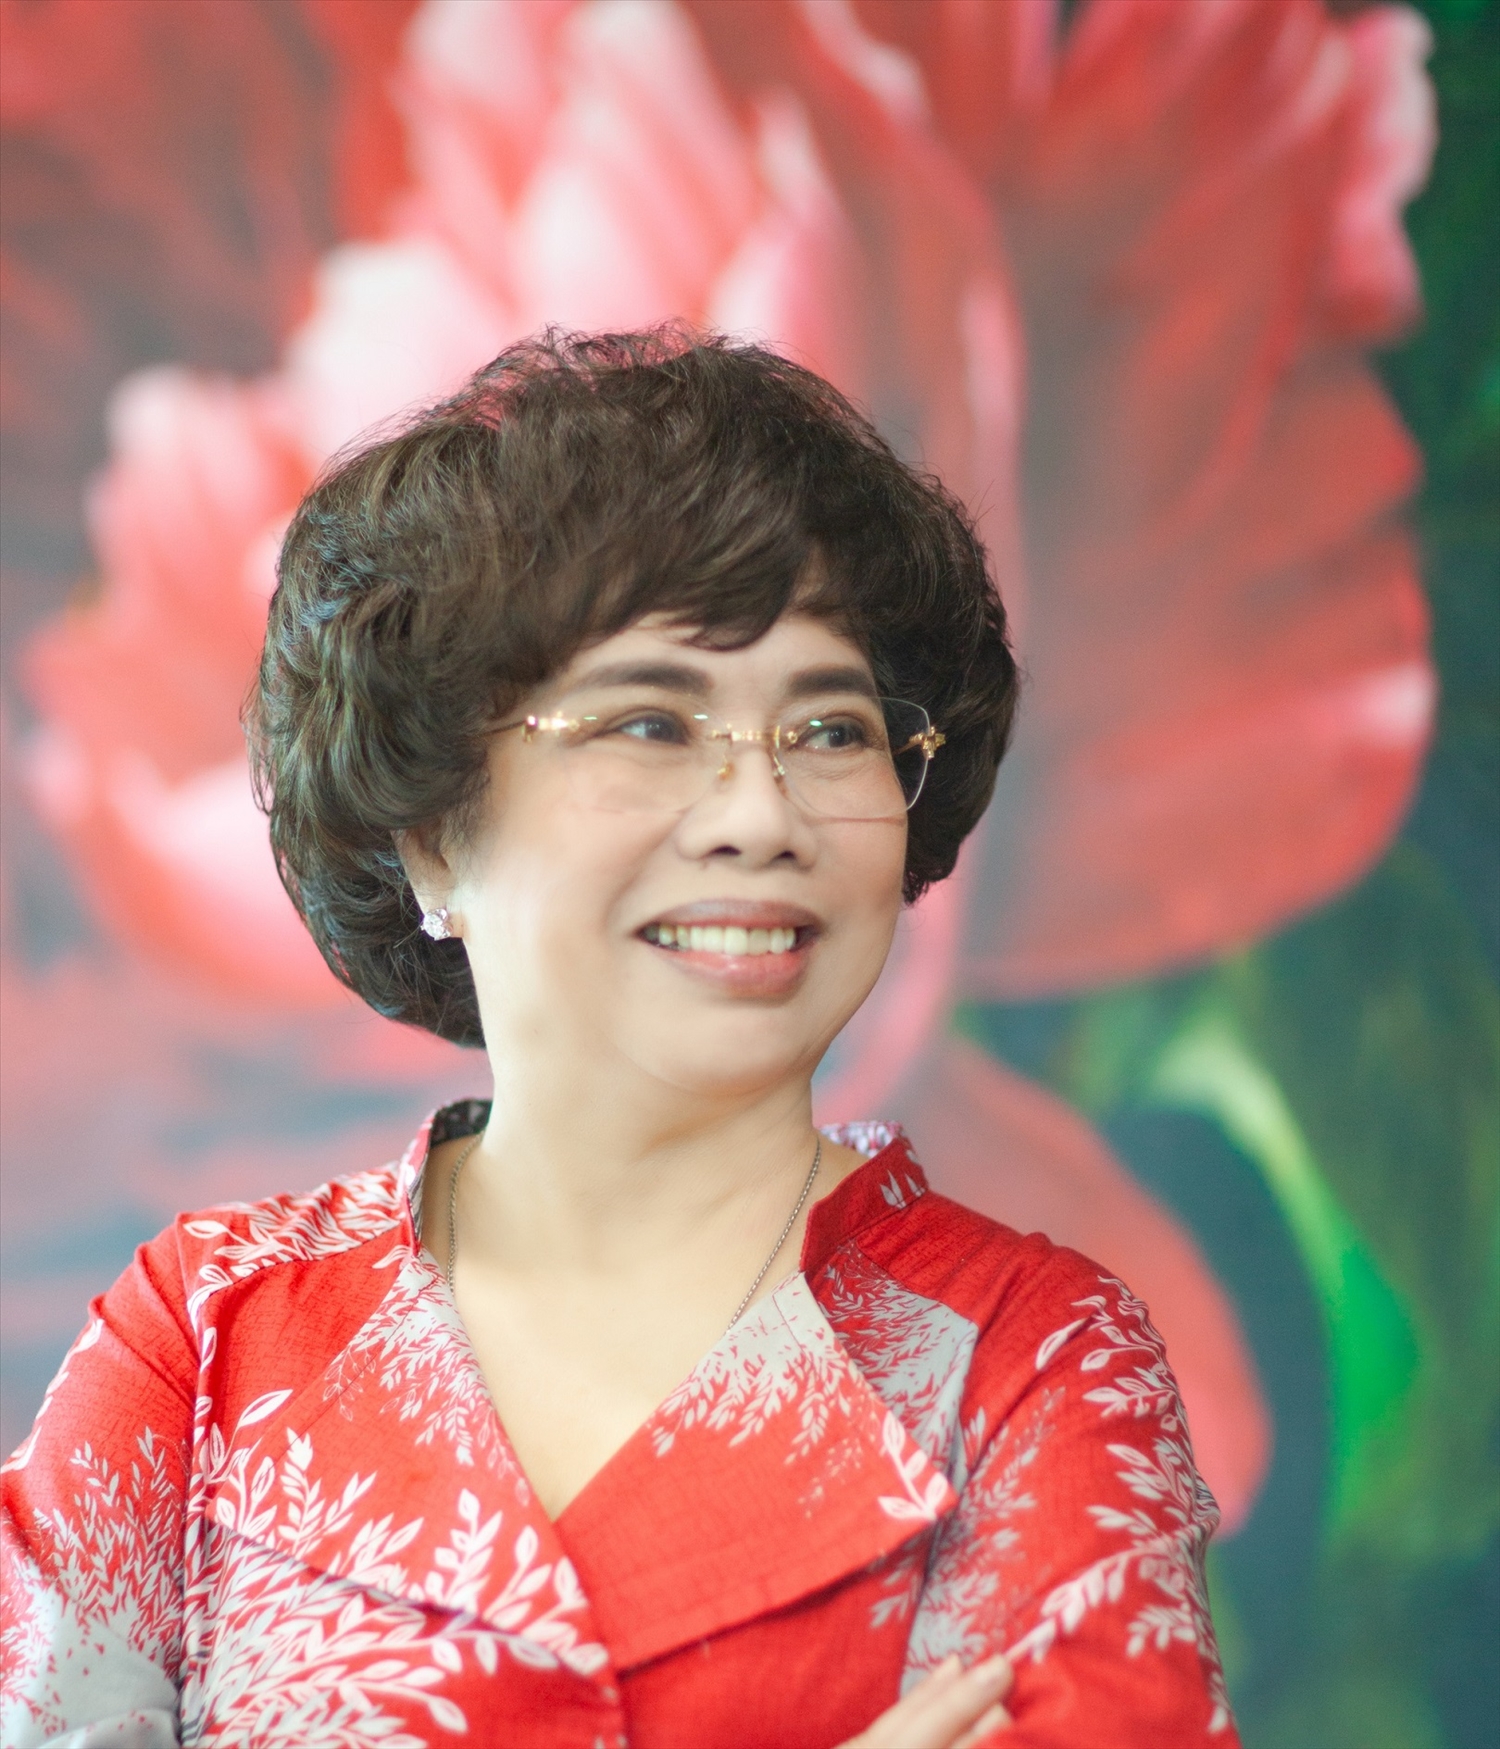 Anh hùng Lao động Thái Hương, Nhà Sáng lập Tập đoàn TH, Tổng Giám đốc Ngân hàng TMCP Bắc Á